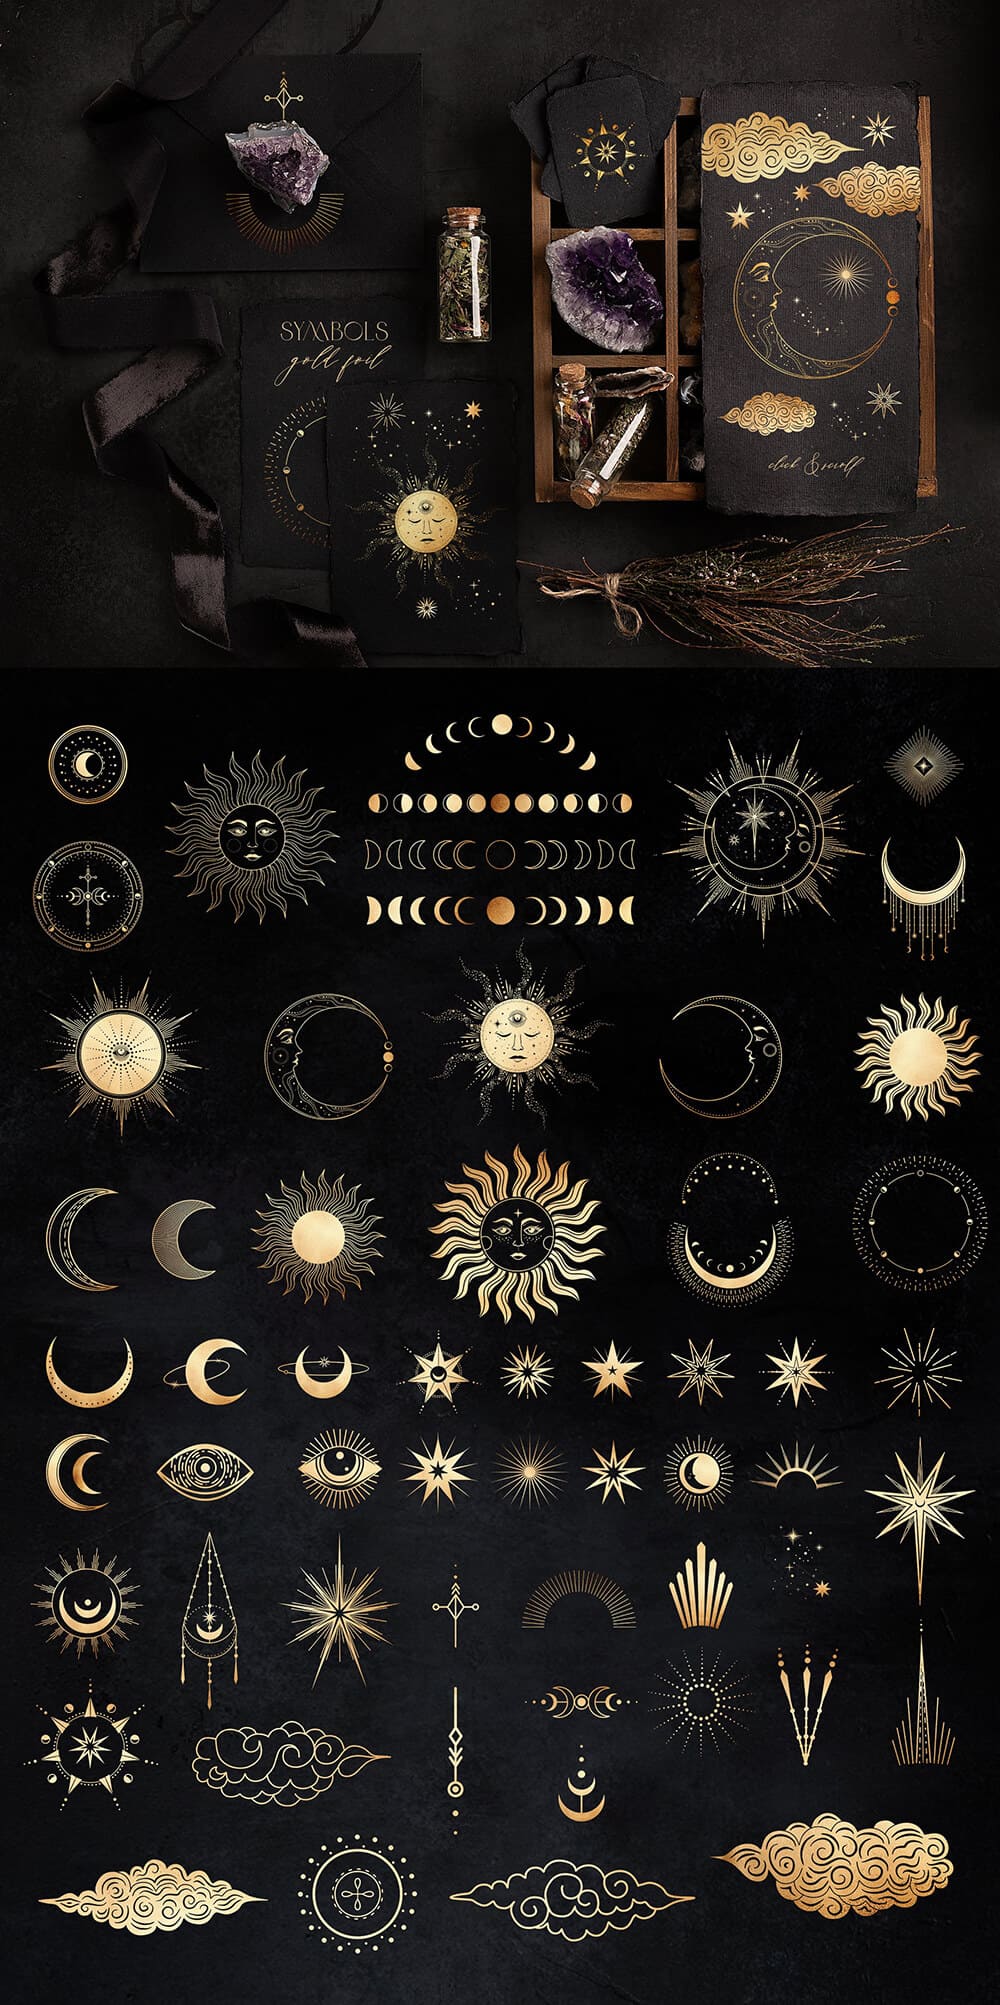 神秘的魔法古老占卜星座元素系列插画素材包